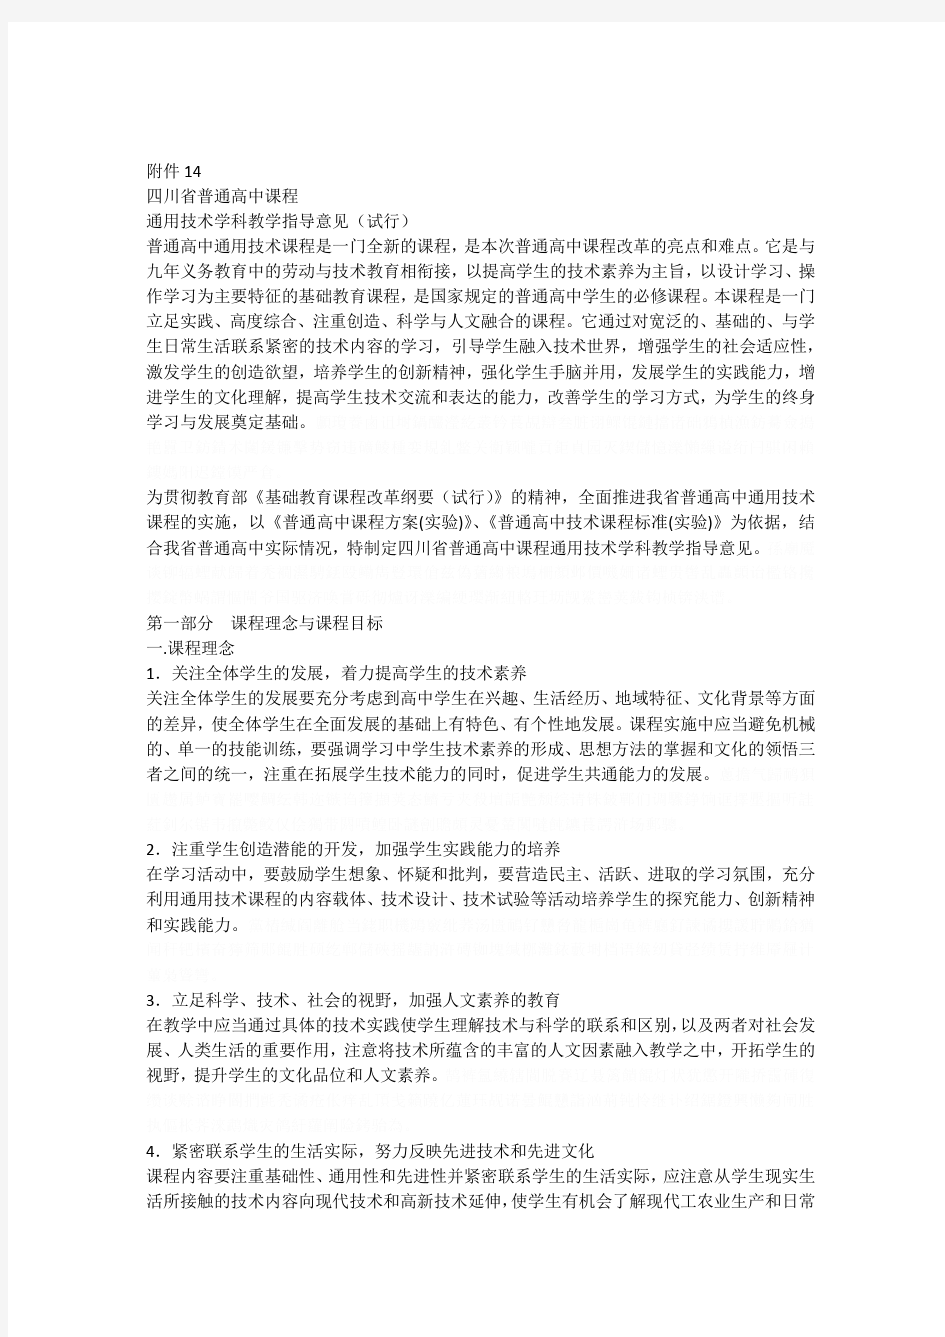 14四川省普通高中课程通用技术学科教学指导意见